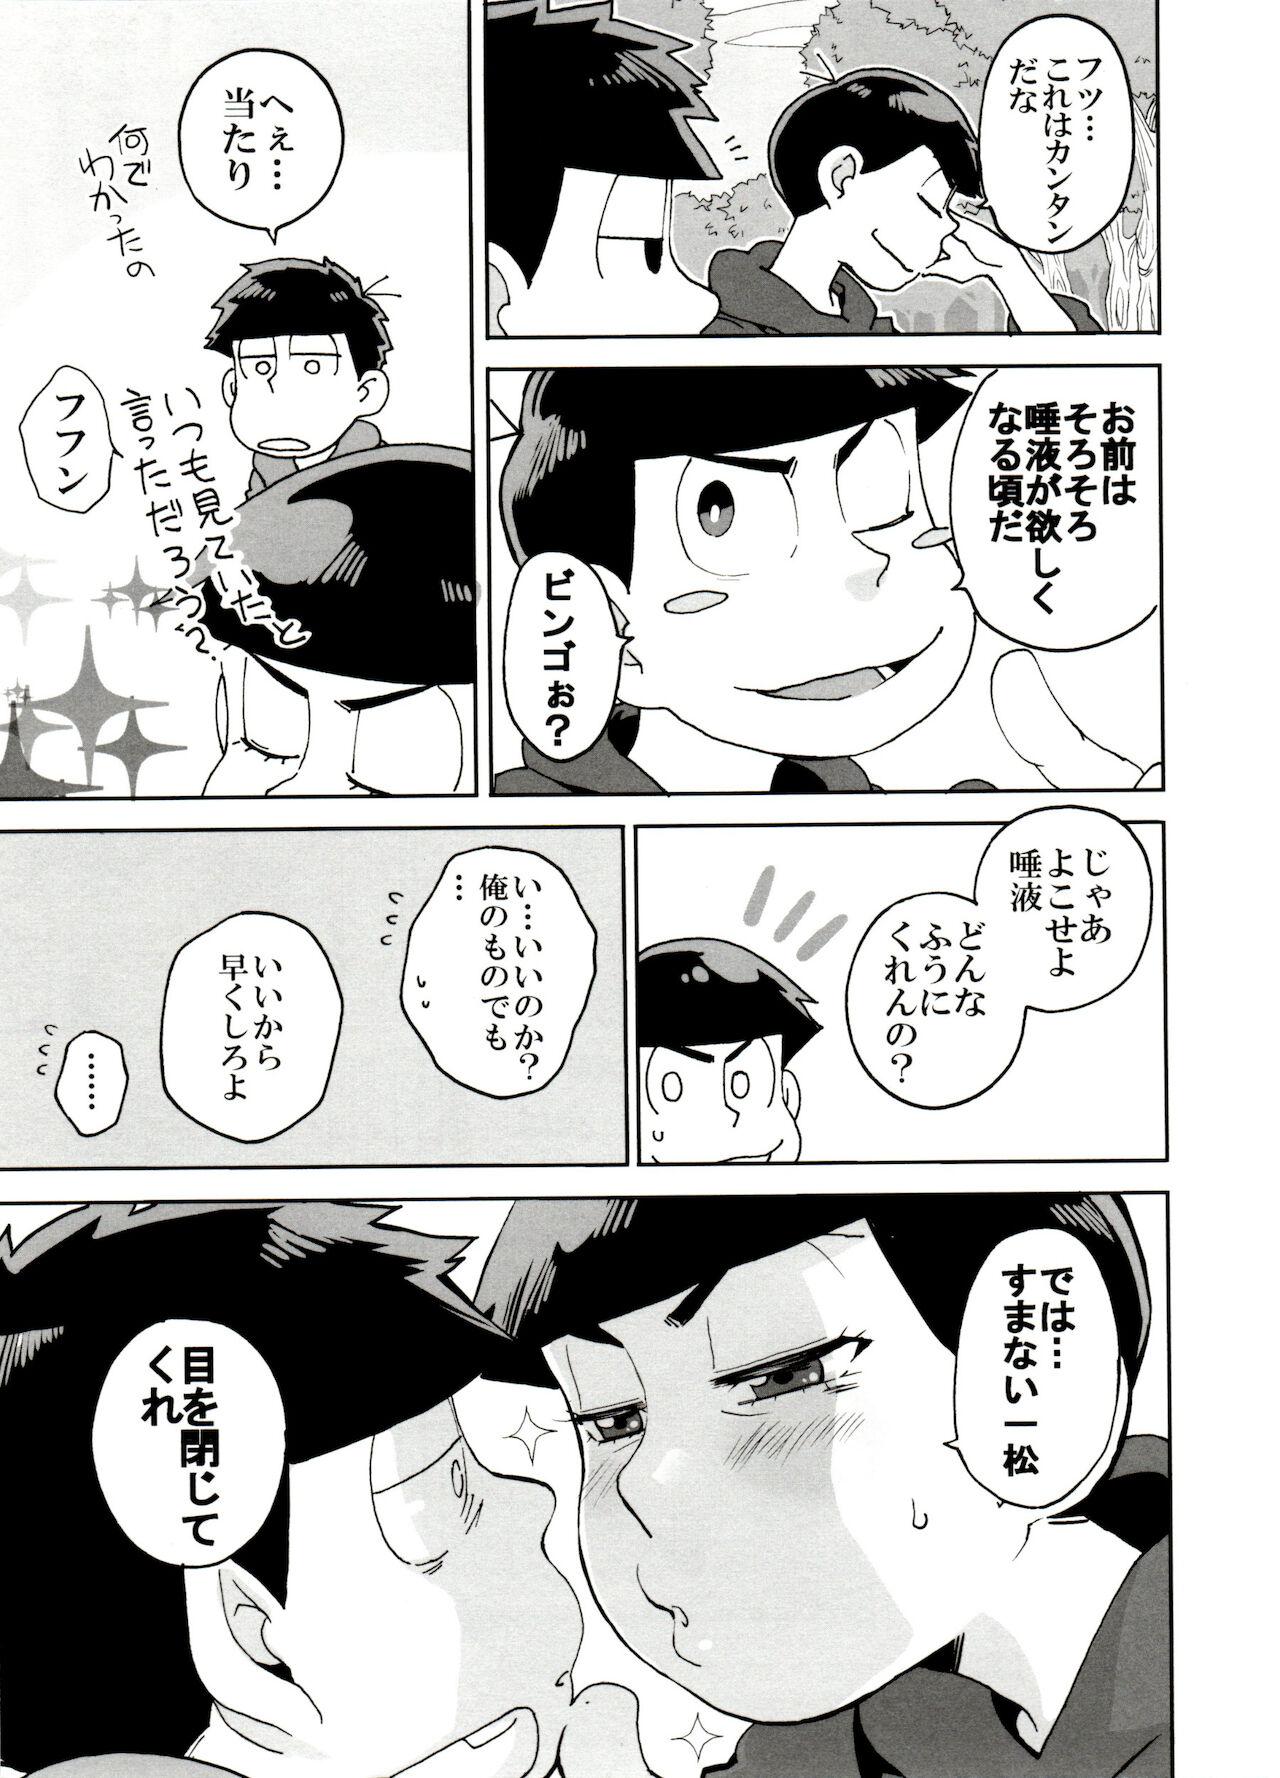 Hung SM Matsu 2 - Osomatsu san Banging - Page 9